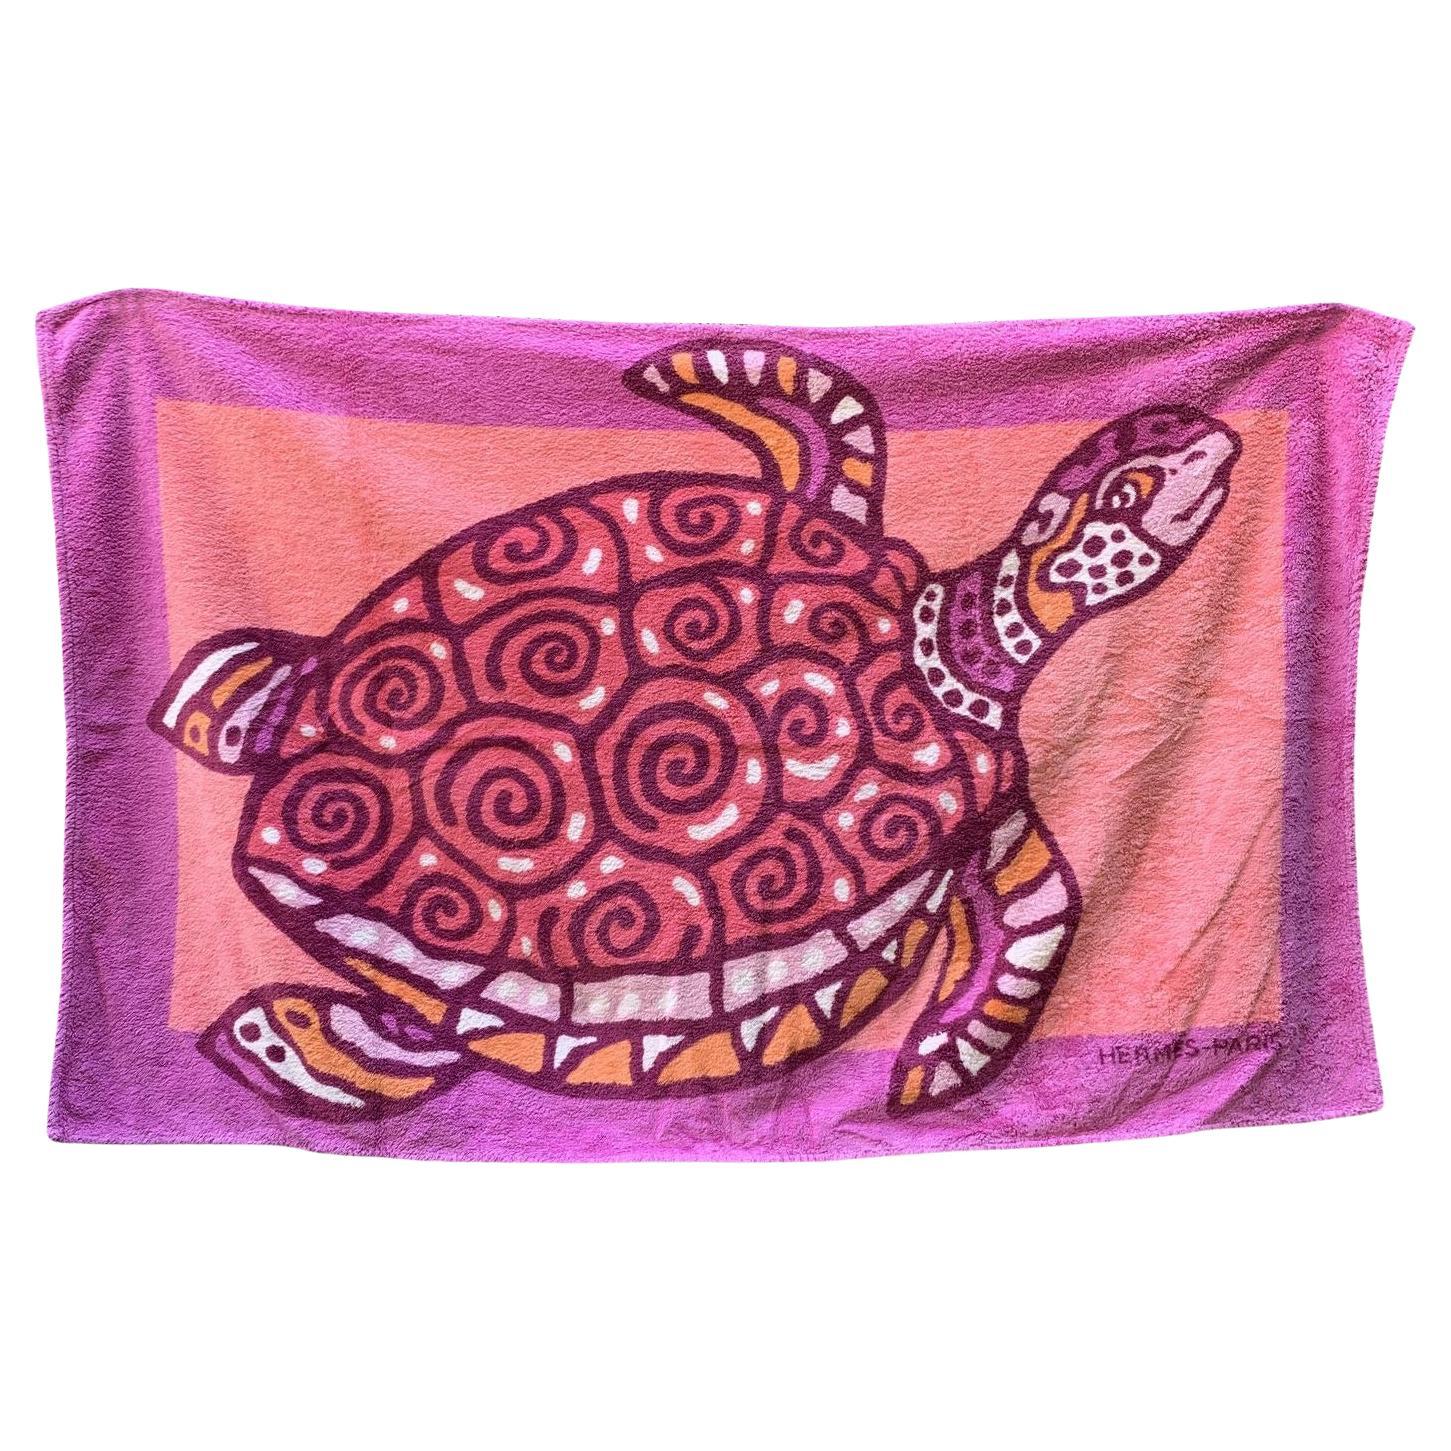 Hermes Vintage Pink Cotton Turtle Pool Beach Towel